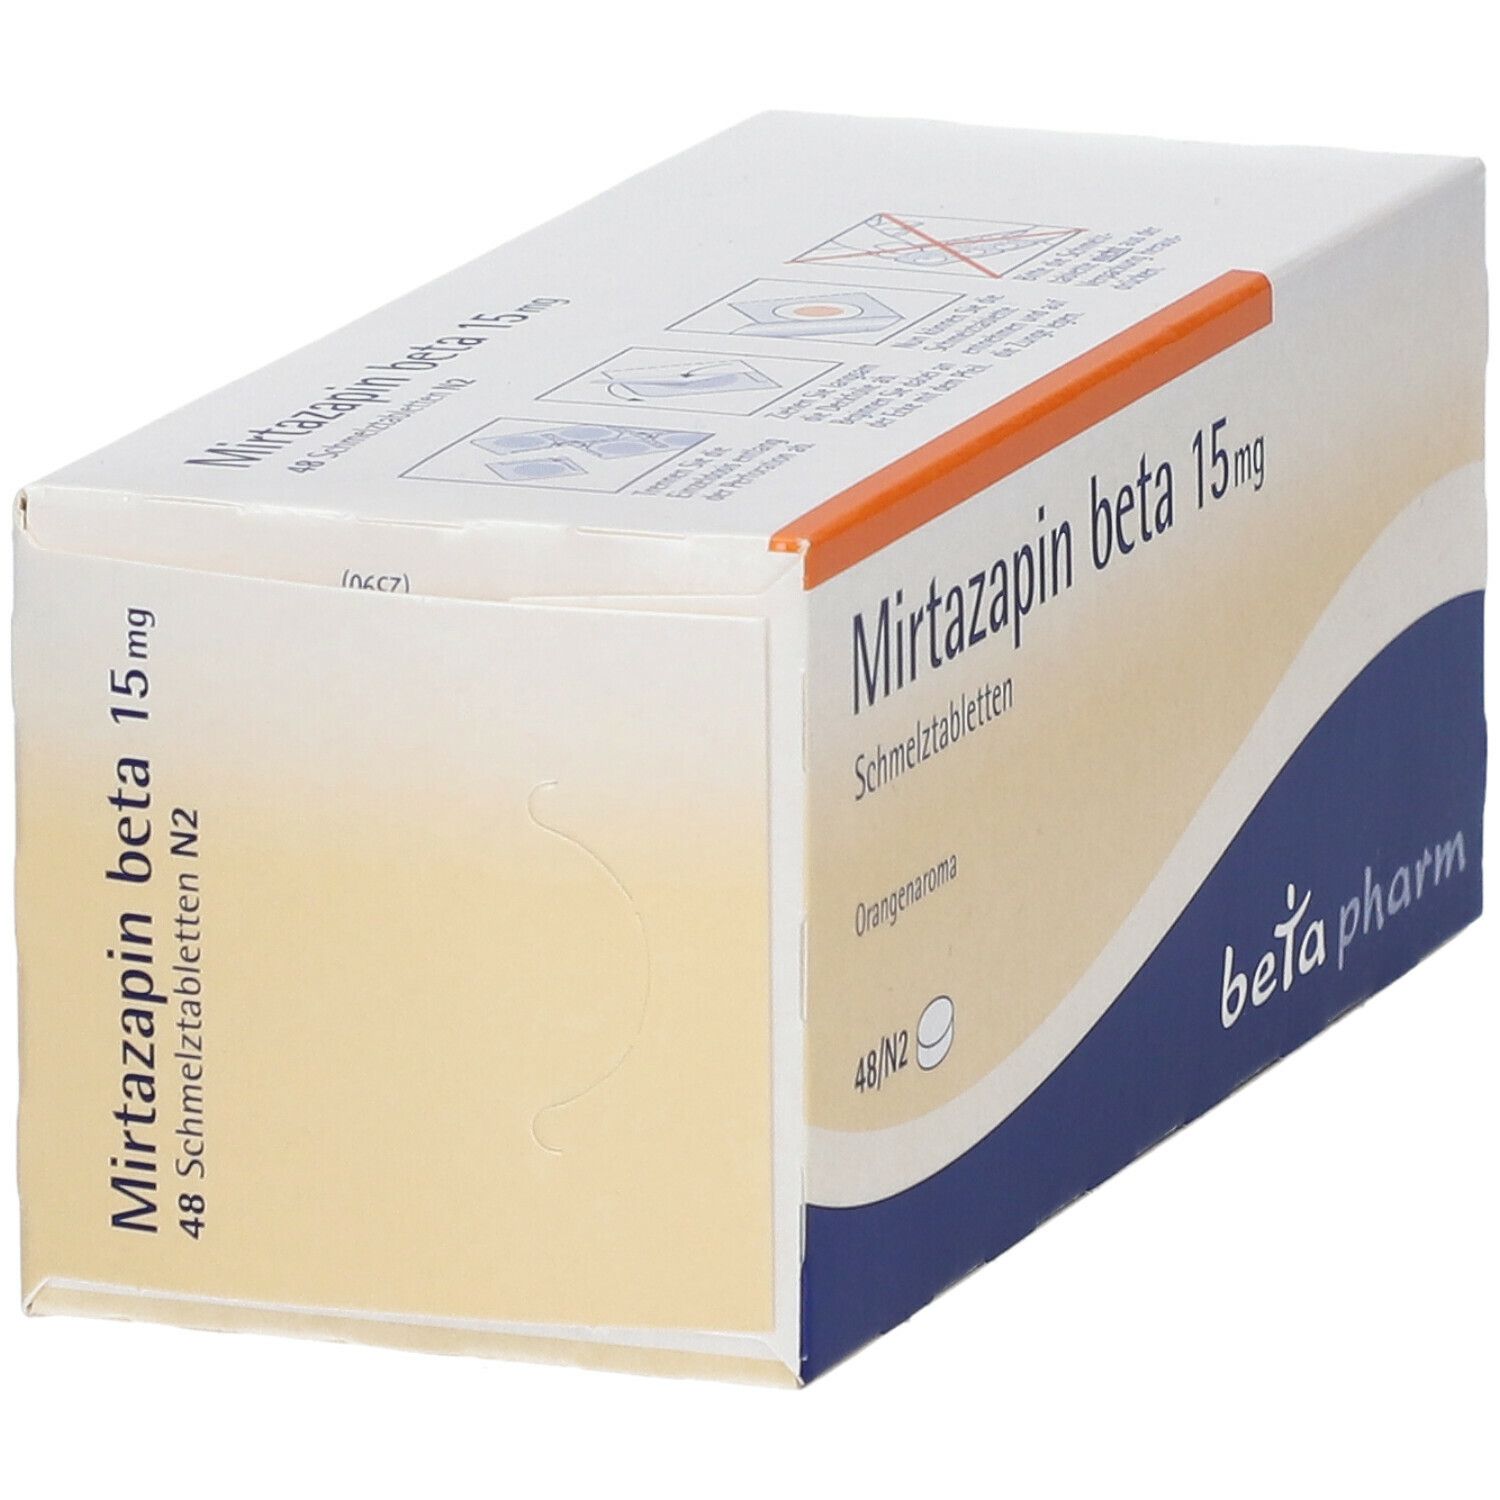 Mirtazapin beta 15 mg Schmelztabletten